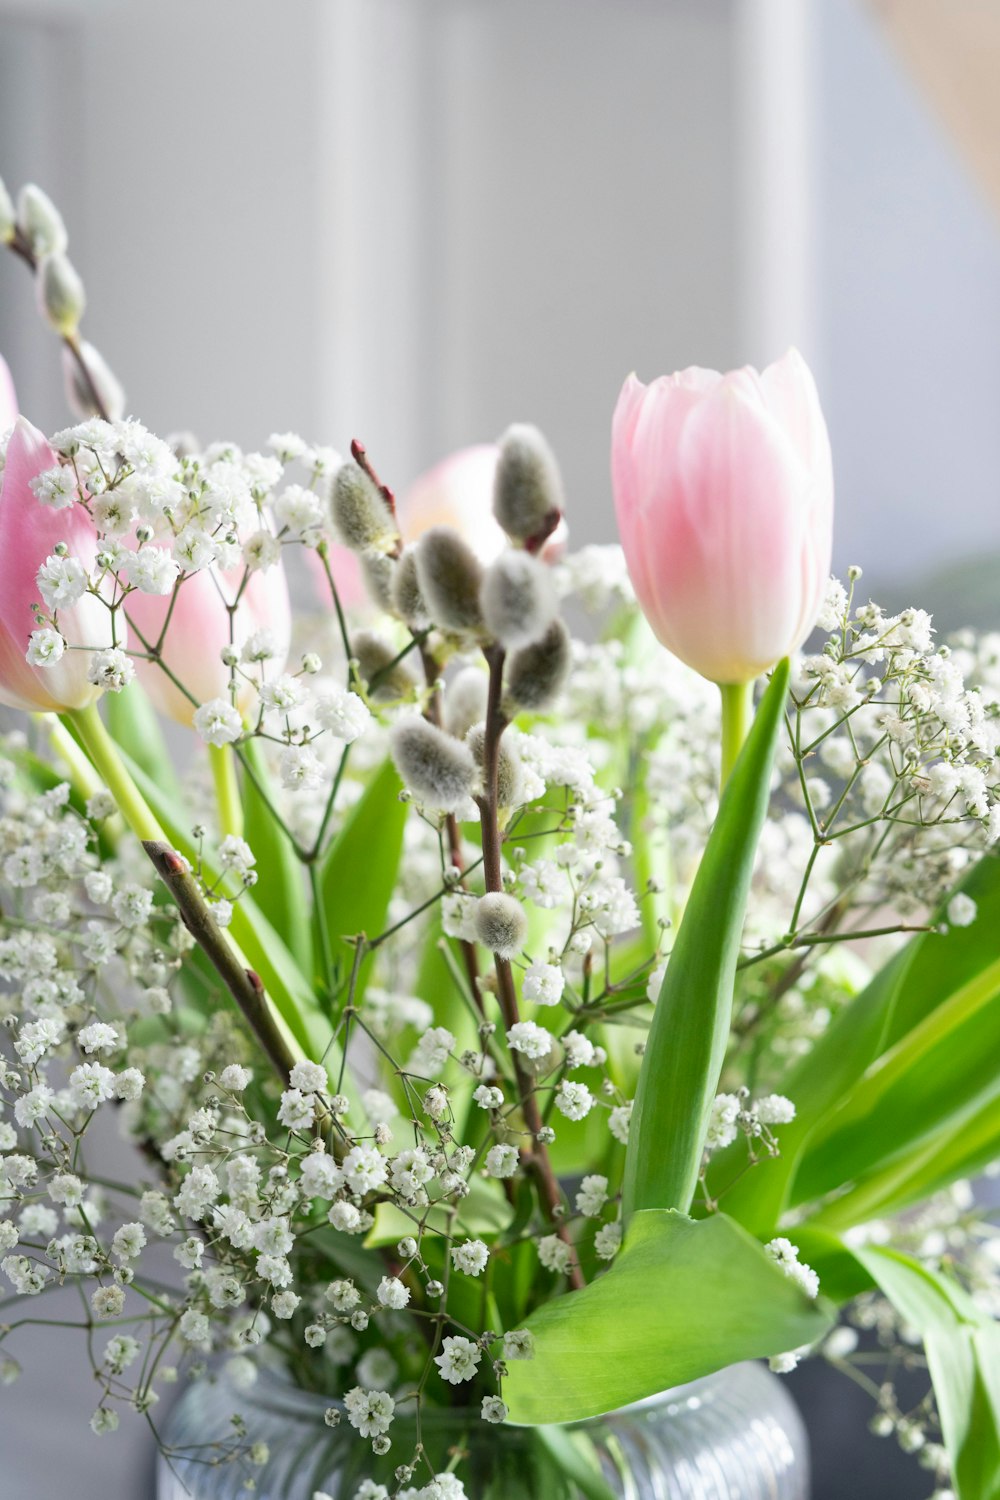 ティルトシフトレンズのピンクと白の花